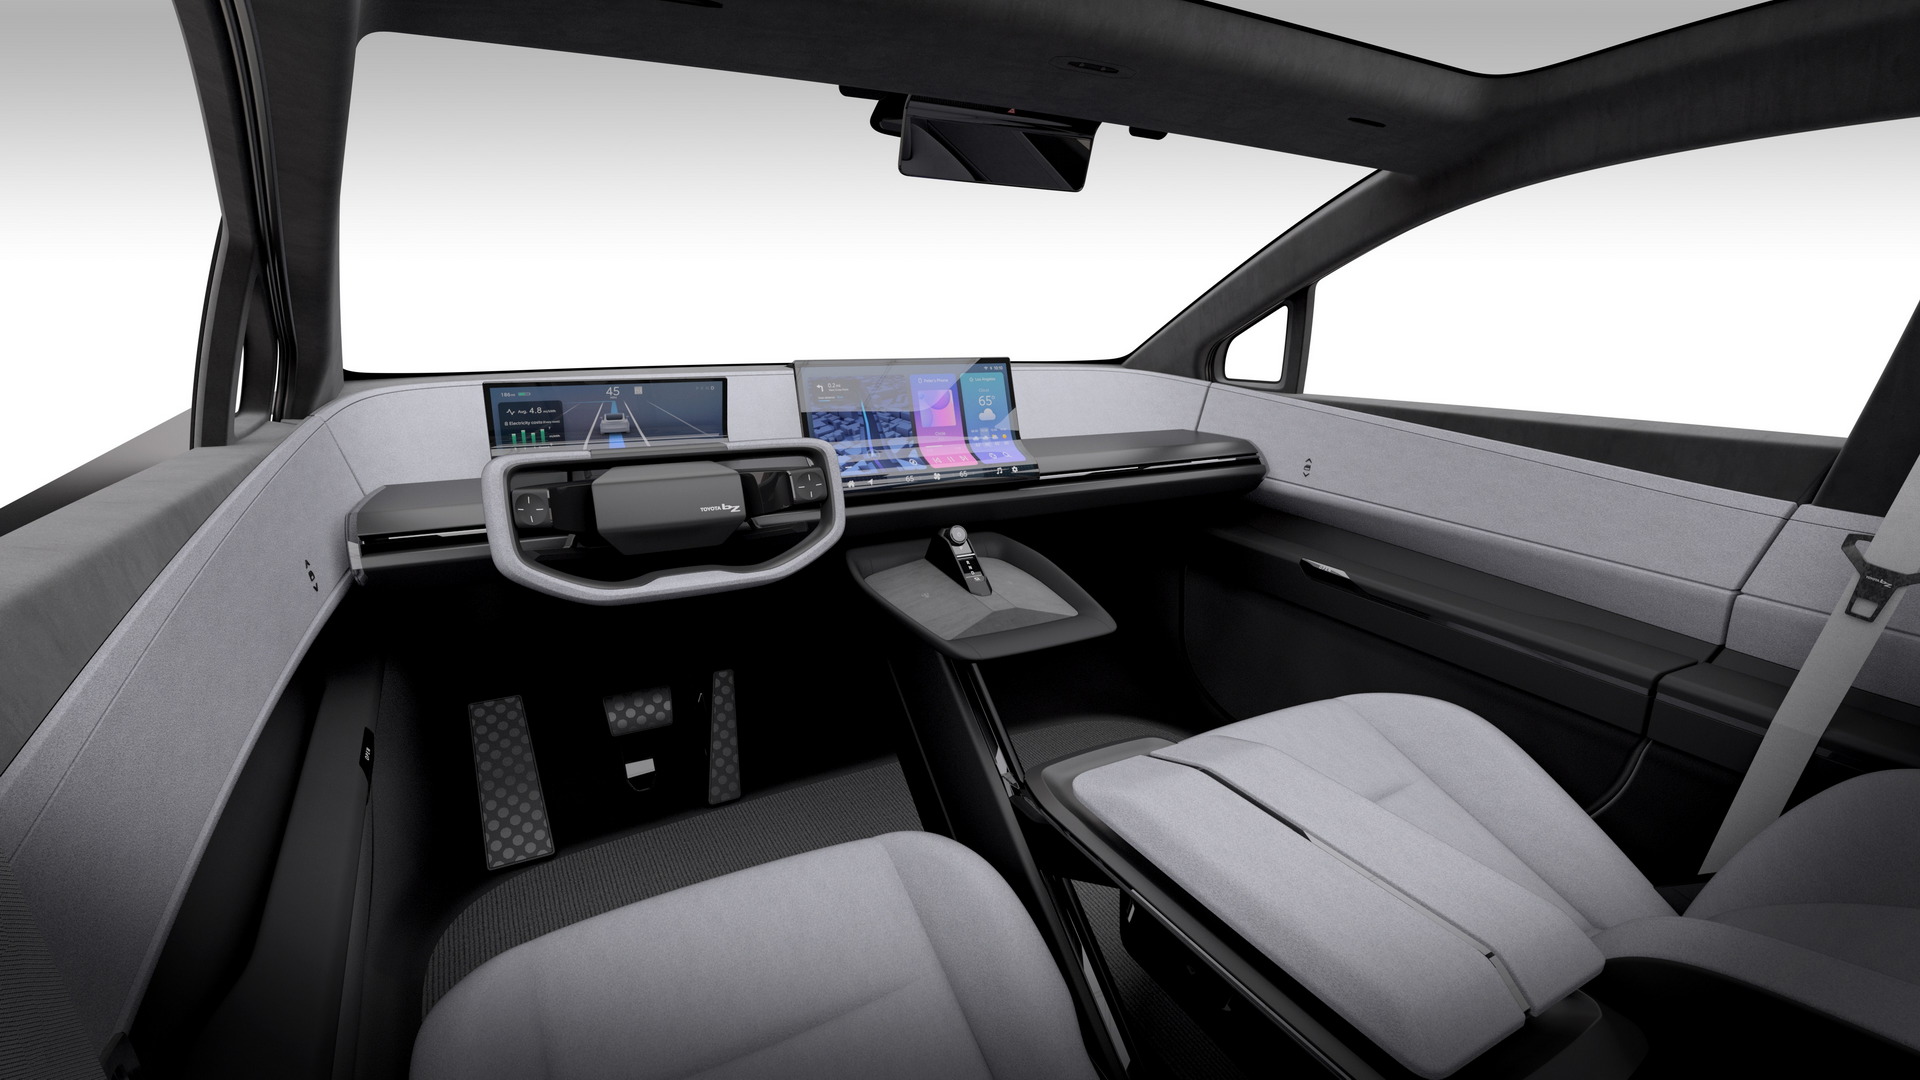 تدشين تويوتا bZ كومباكت SUV الكهربائية الجديدة كلياً بتصميم انسيابي وداخلية عصرية 24